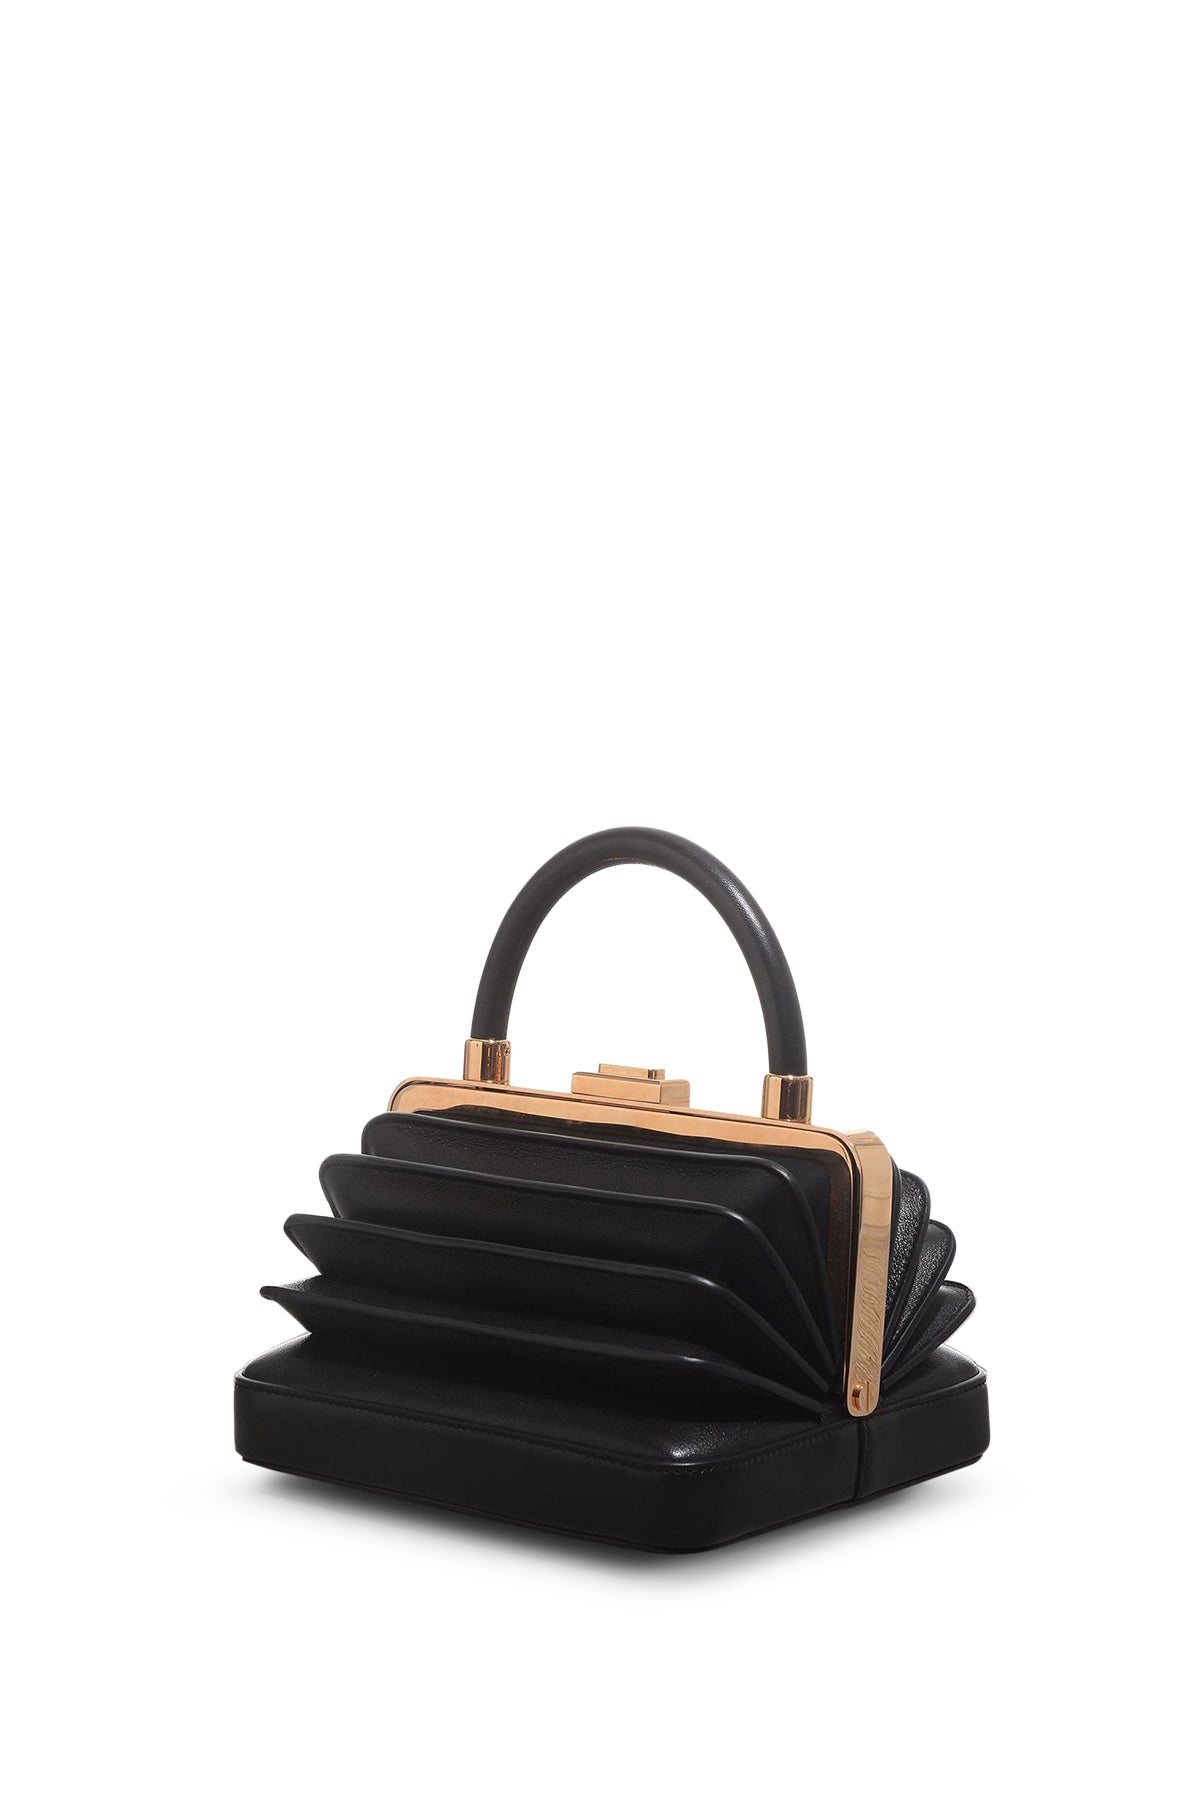 Diana Bag in Black Nappa Leather